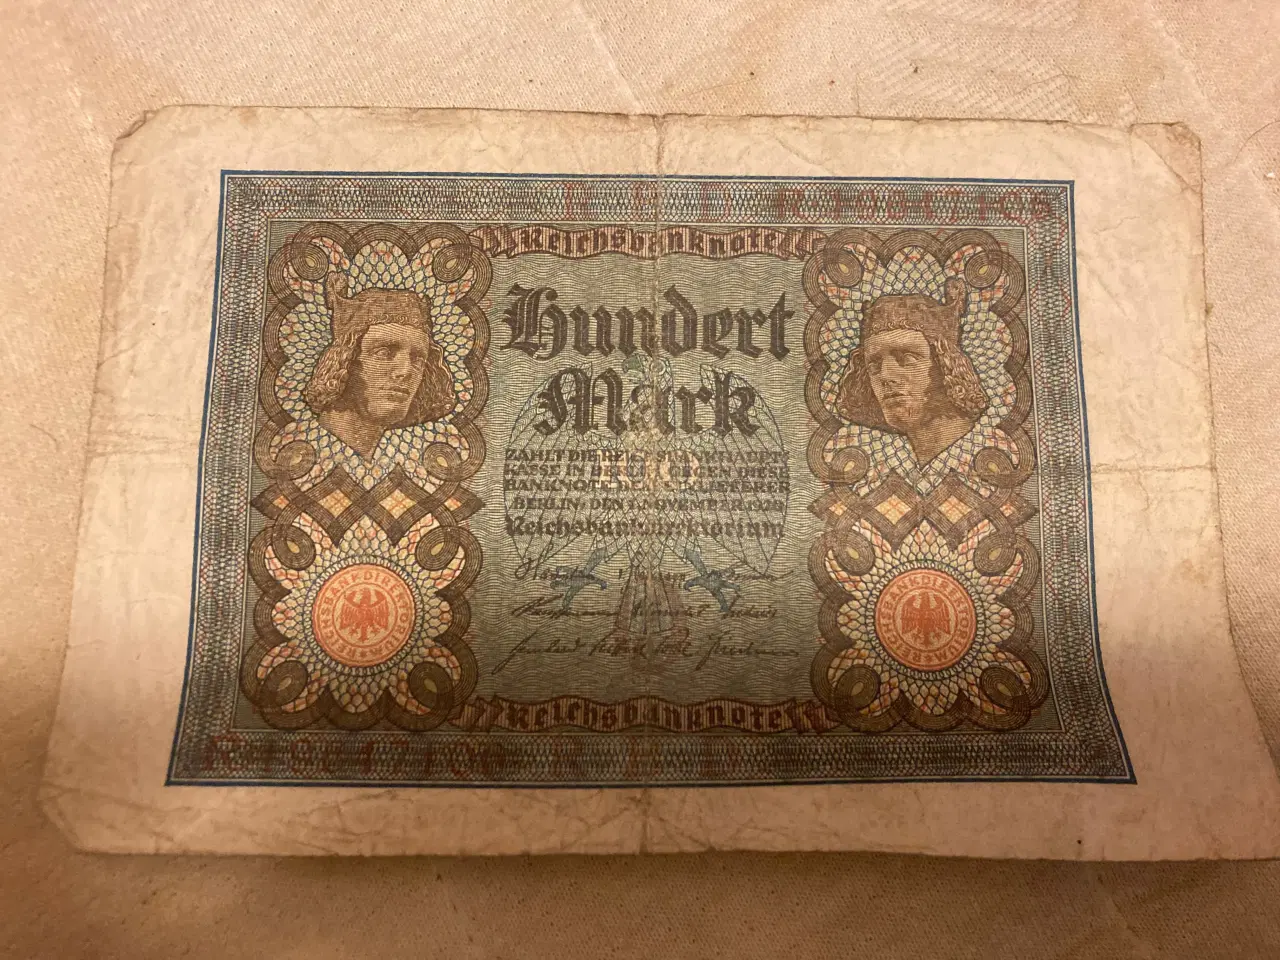 Billede 1 - Tysk 100 mark seddel fra 1920.